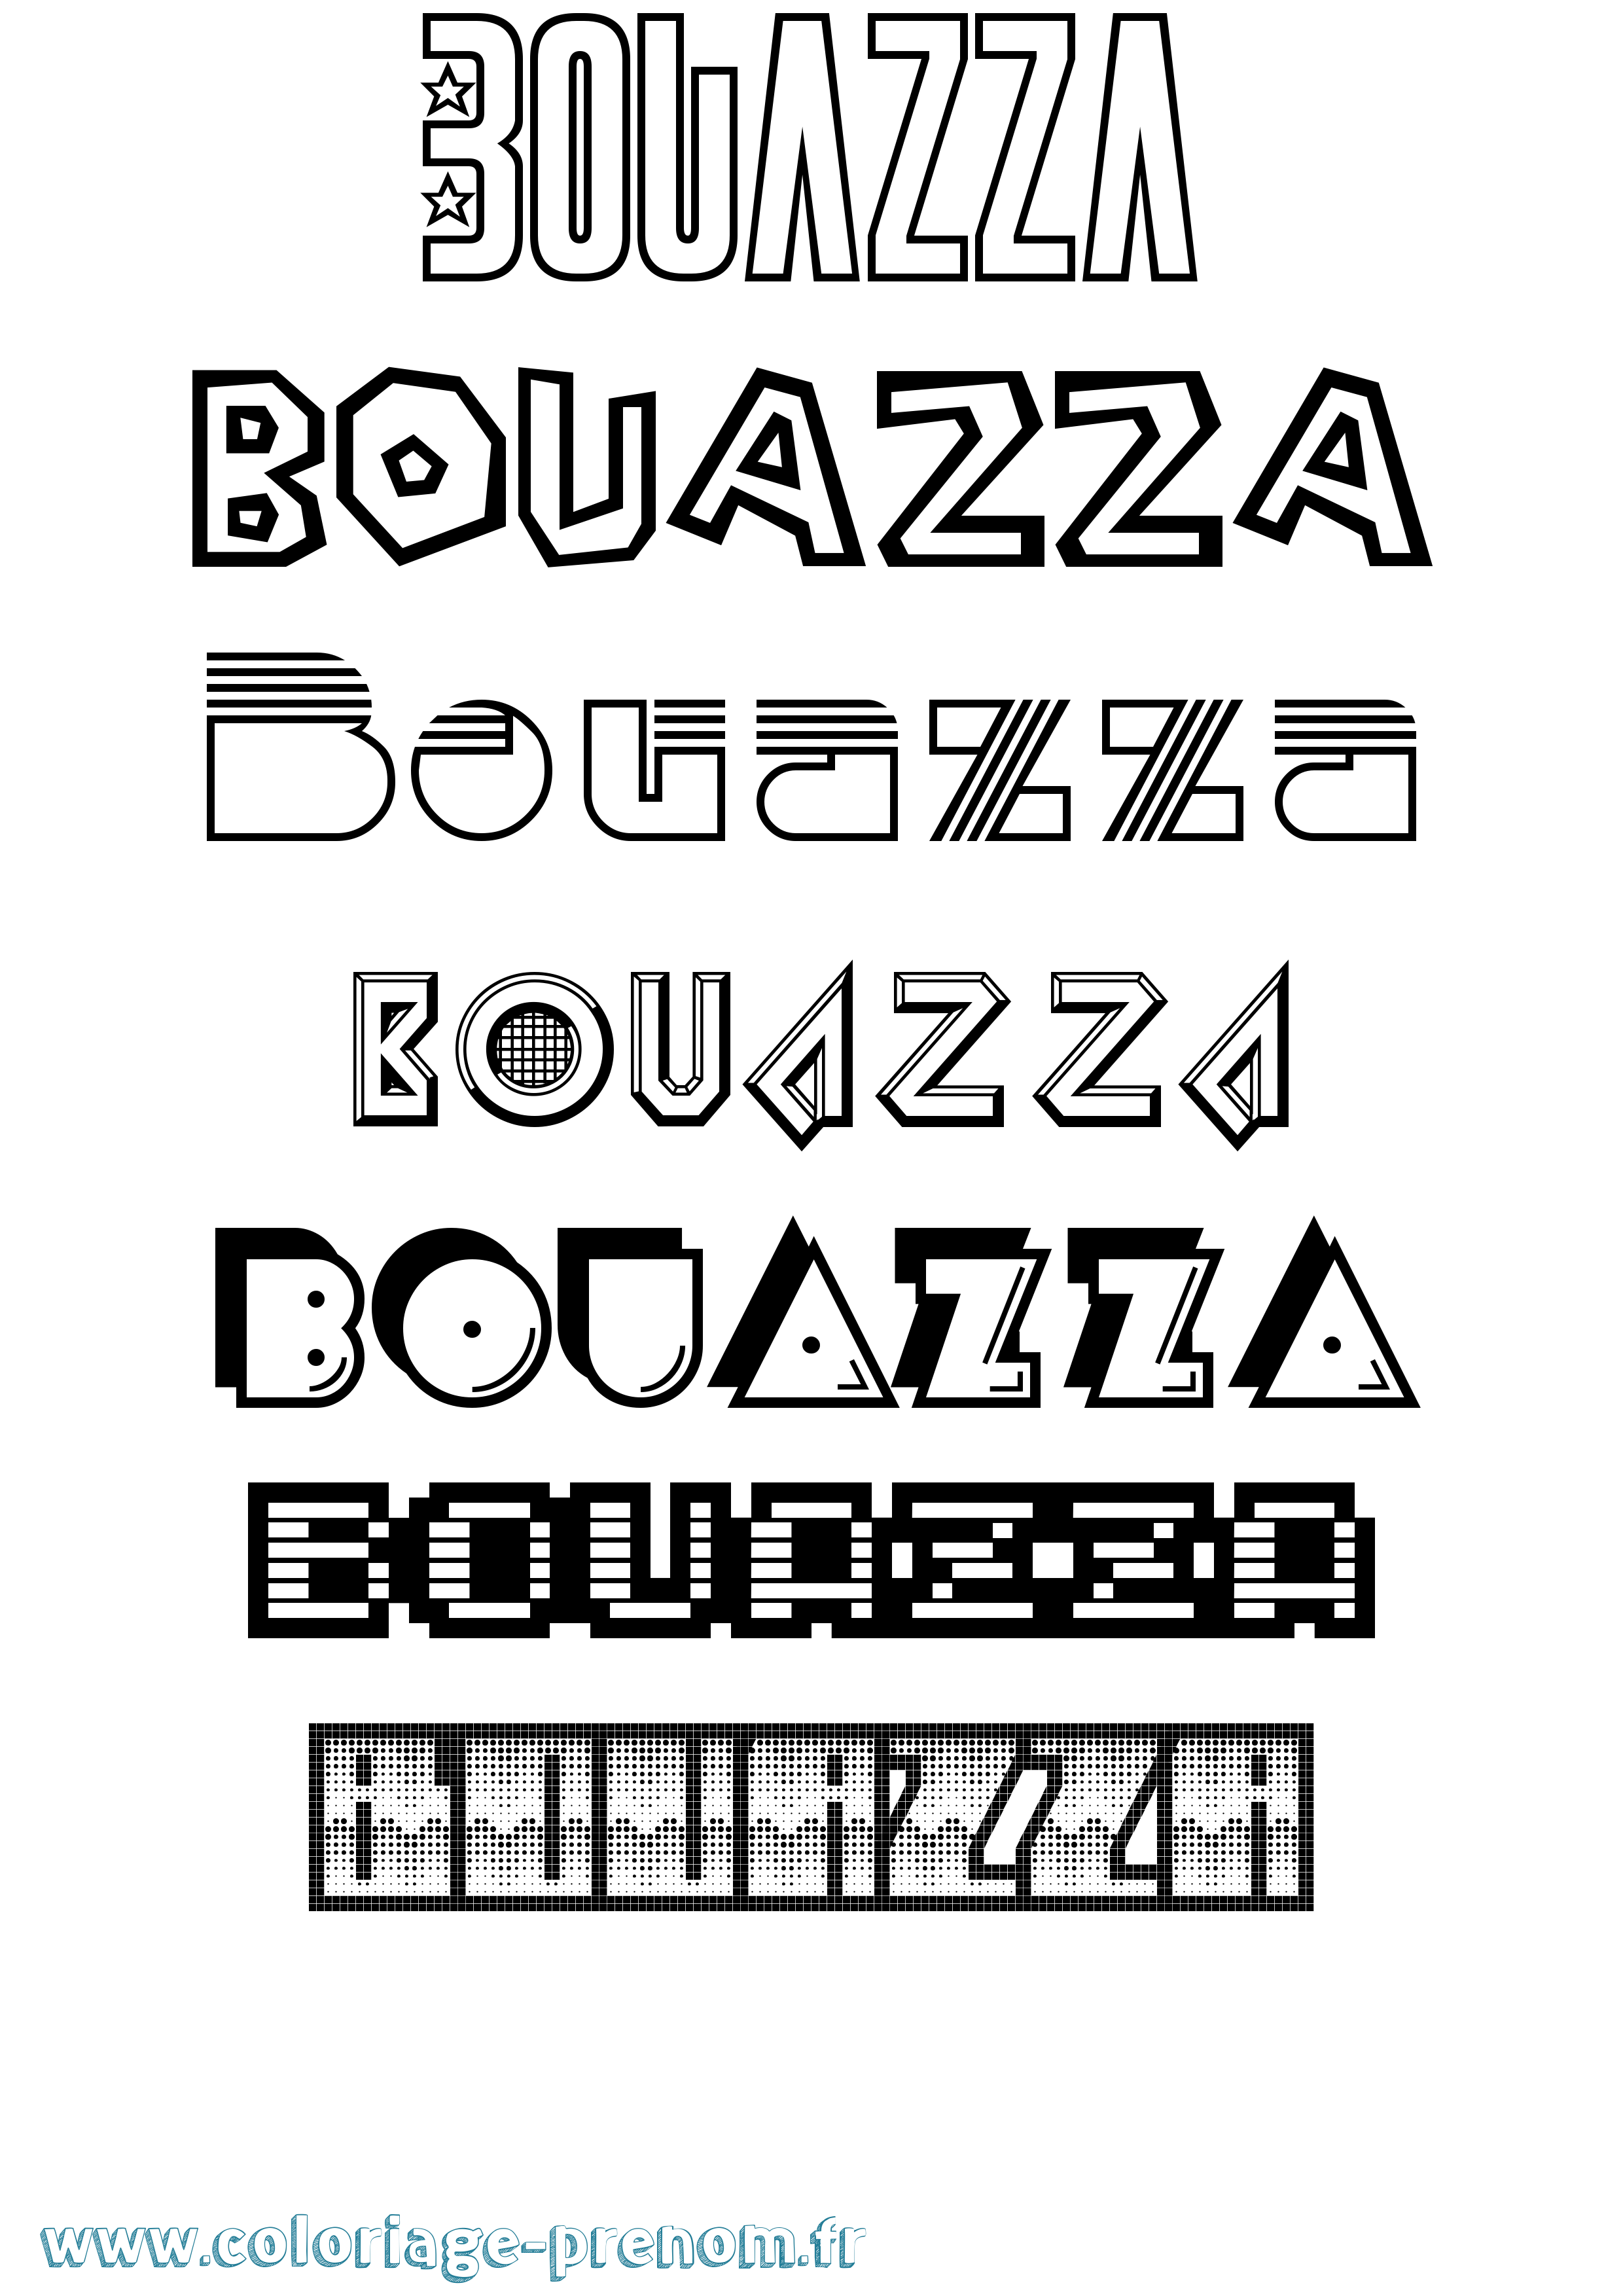 Coloriage prénom Bouazza Jeux Vidéos